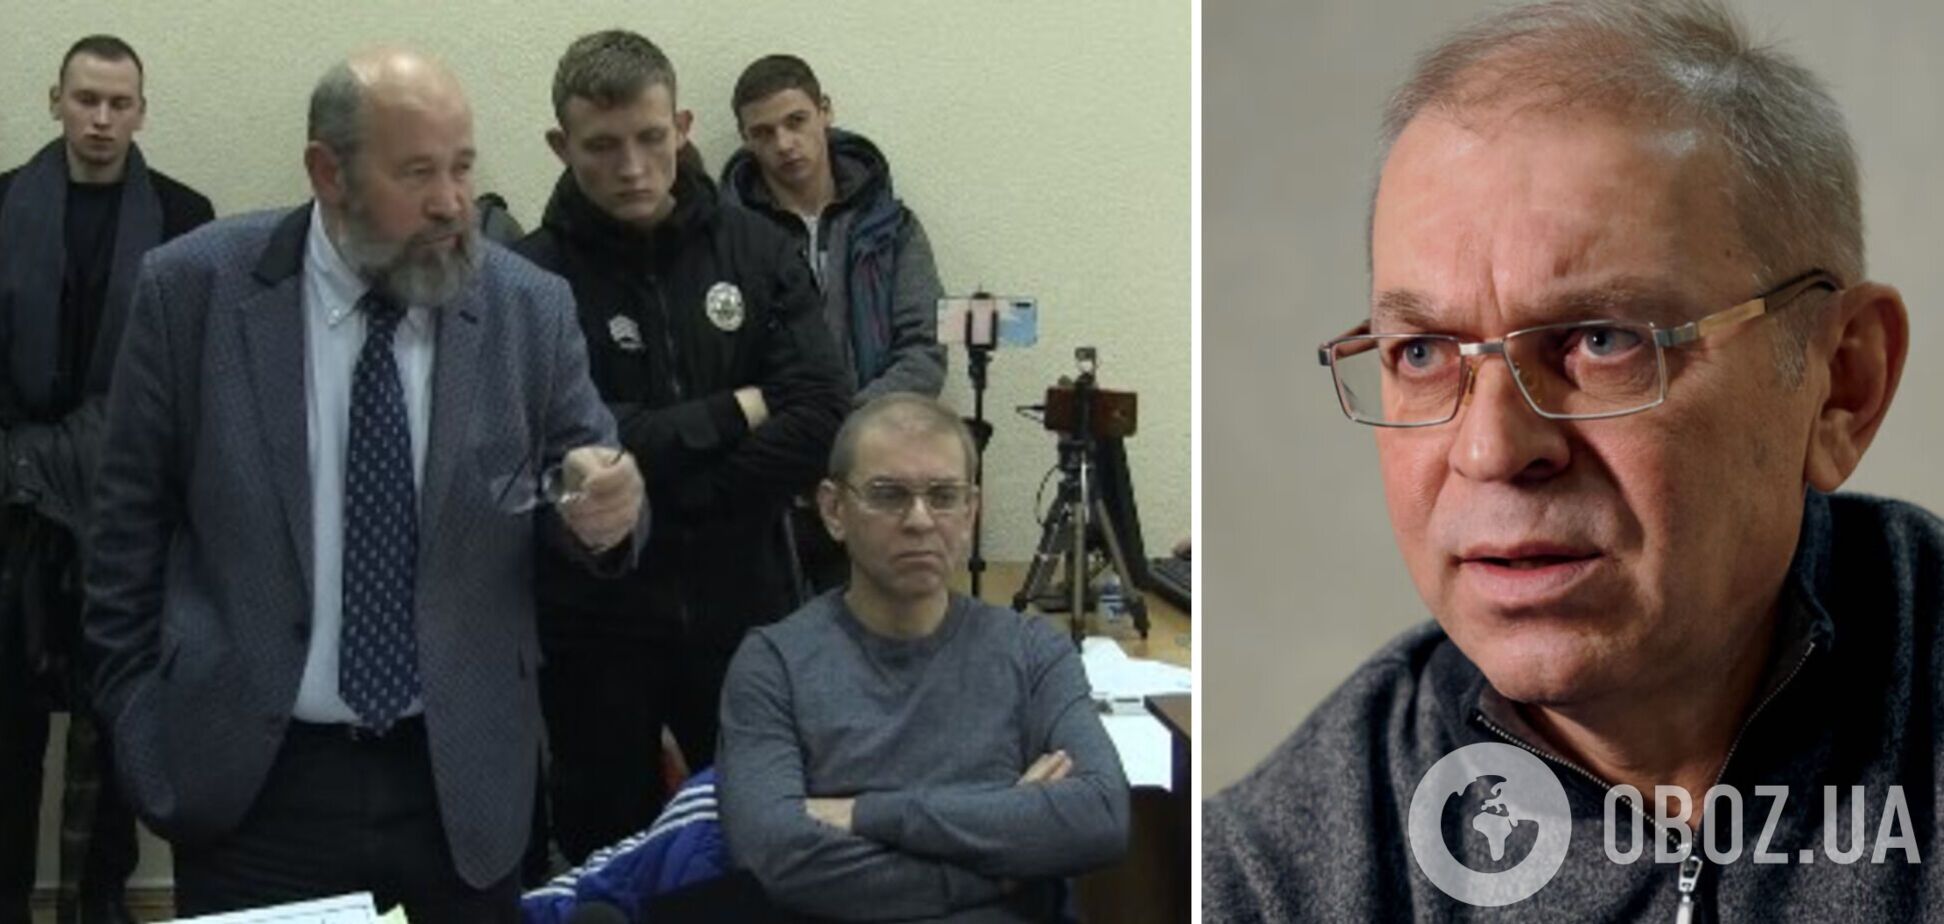 Рано или поздно Пашинский будет оправдан, – адвокат Андрей Федур